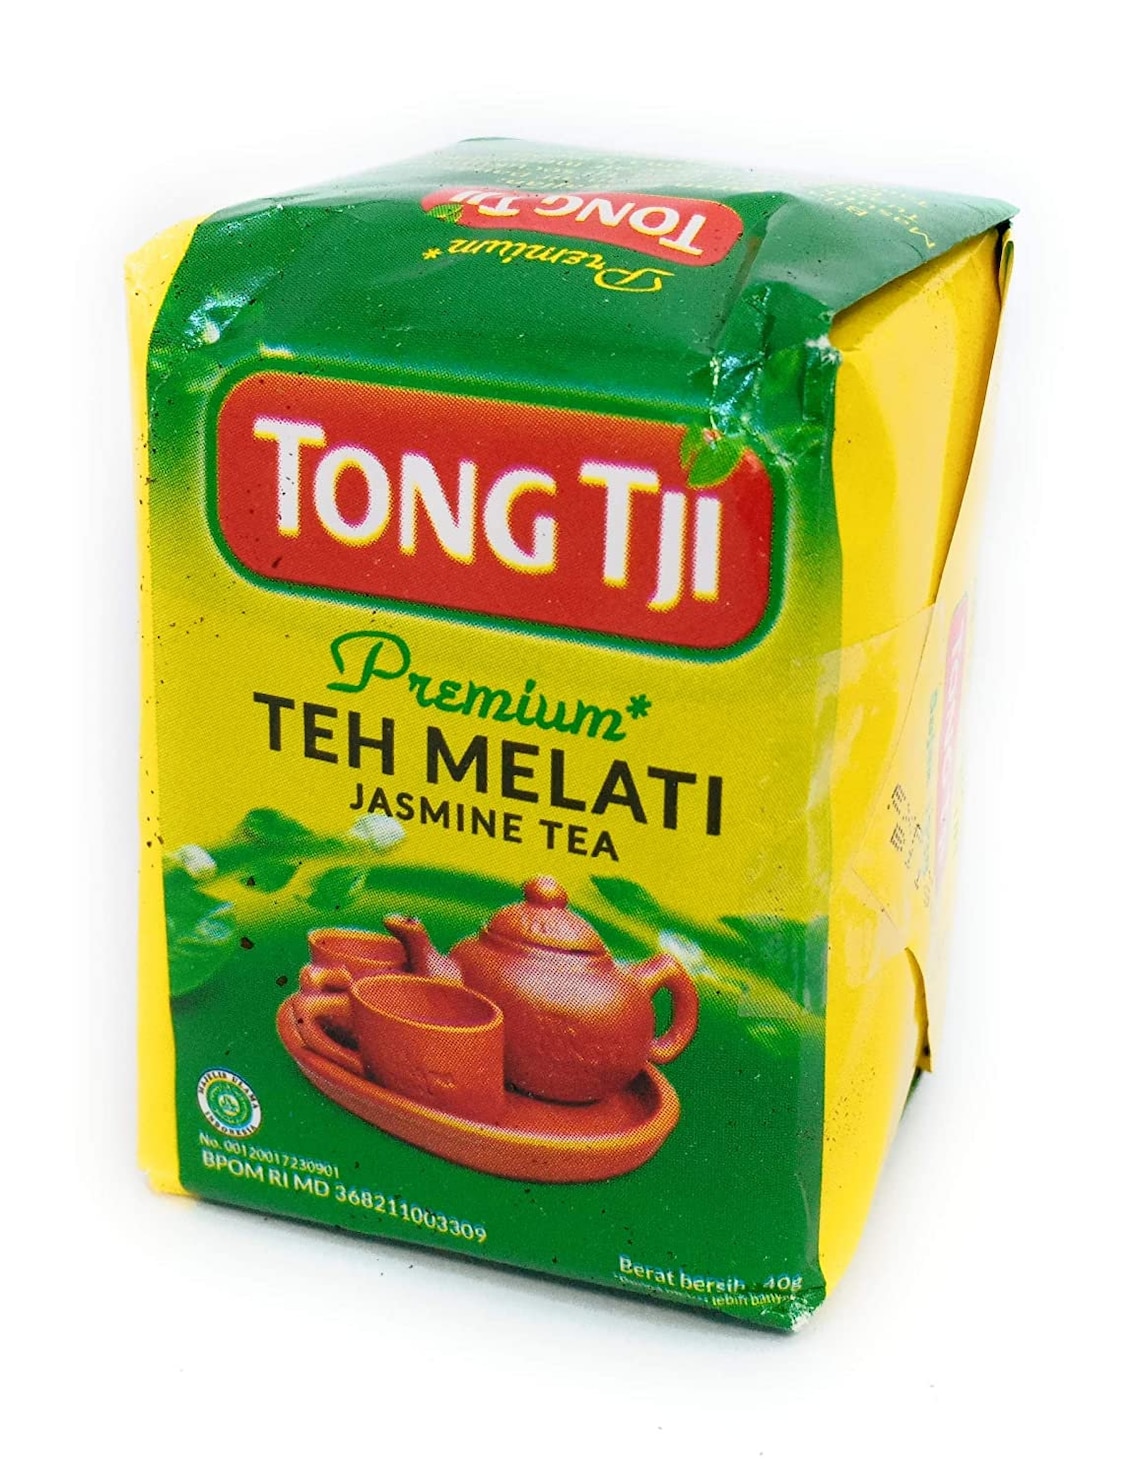 Tong Tji Premium Jasmine Tea 40 Gram Indonesia | Etsy